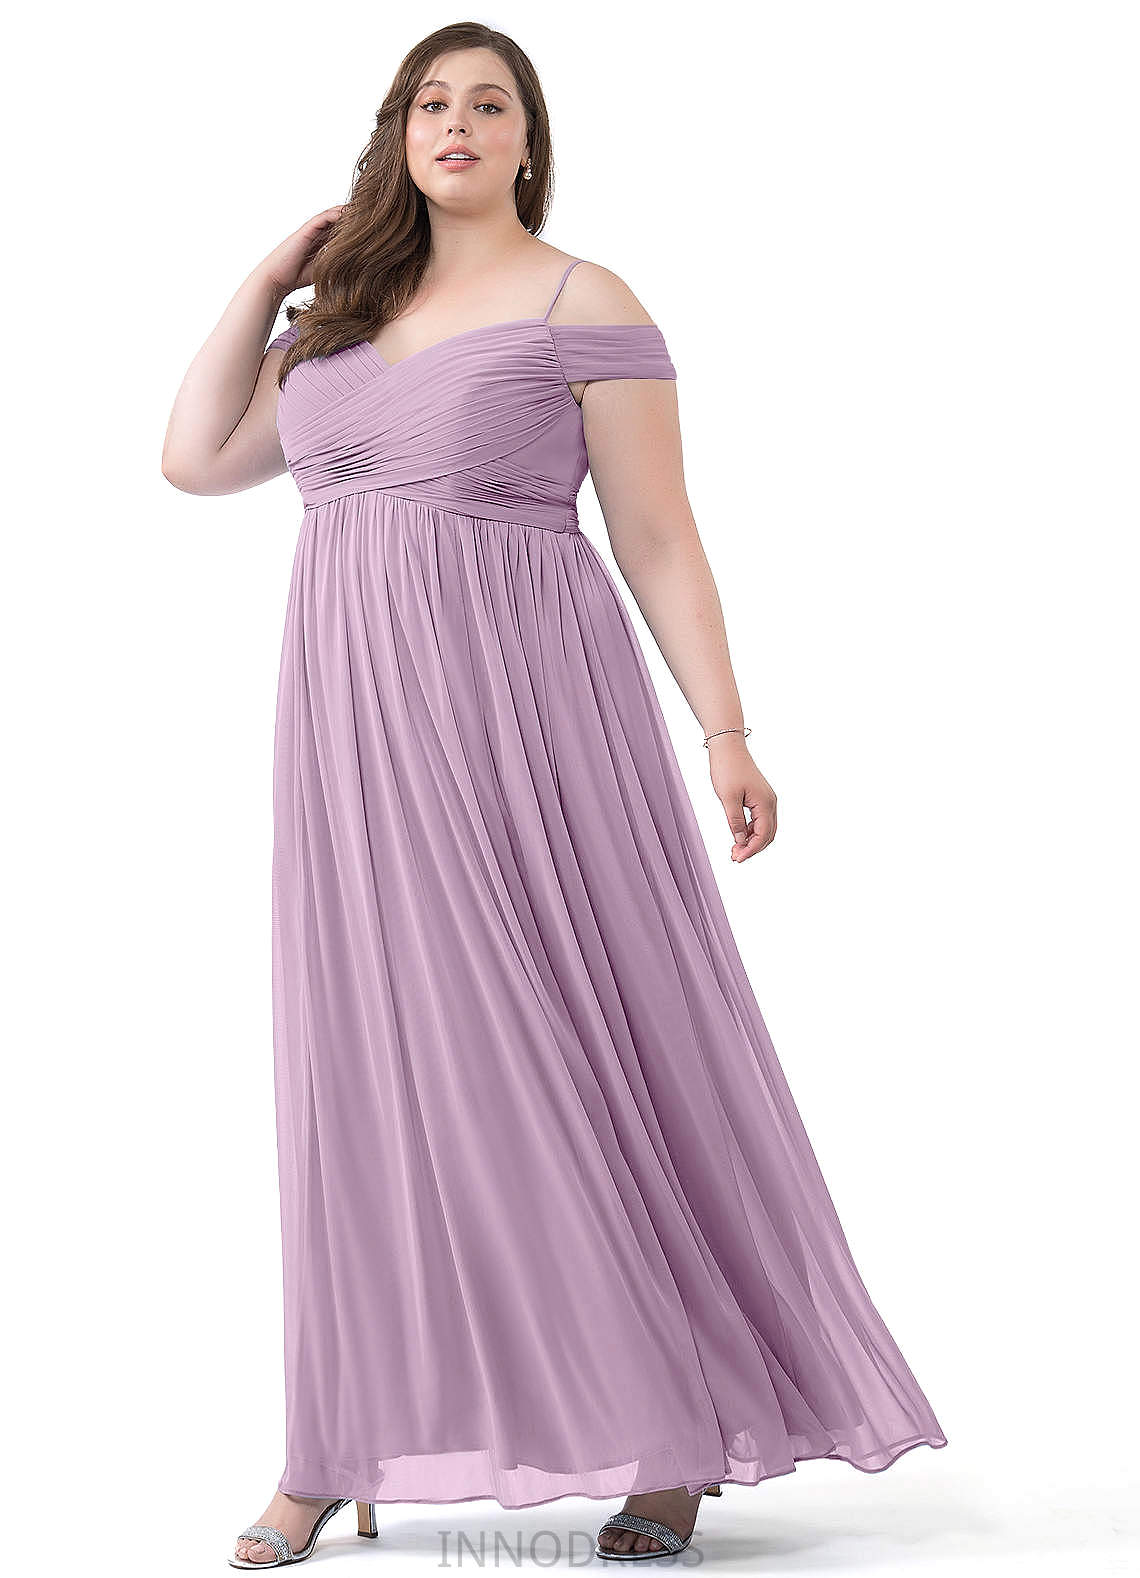 Leticia V-Neck A-Line/Princess Sleeveless Natural Waist Floor Length Bridesmaid Dresses